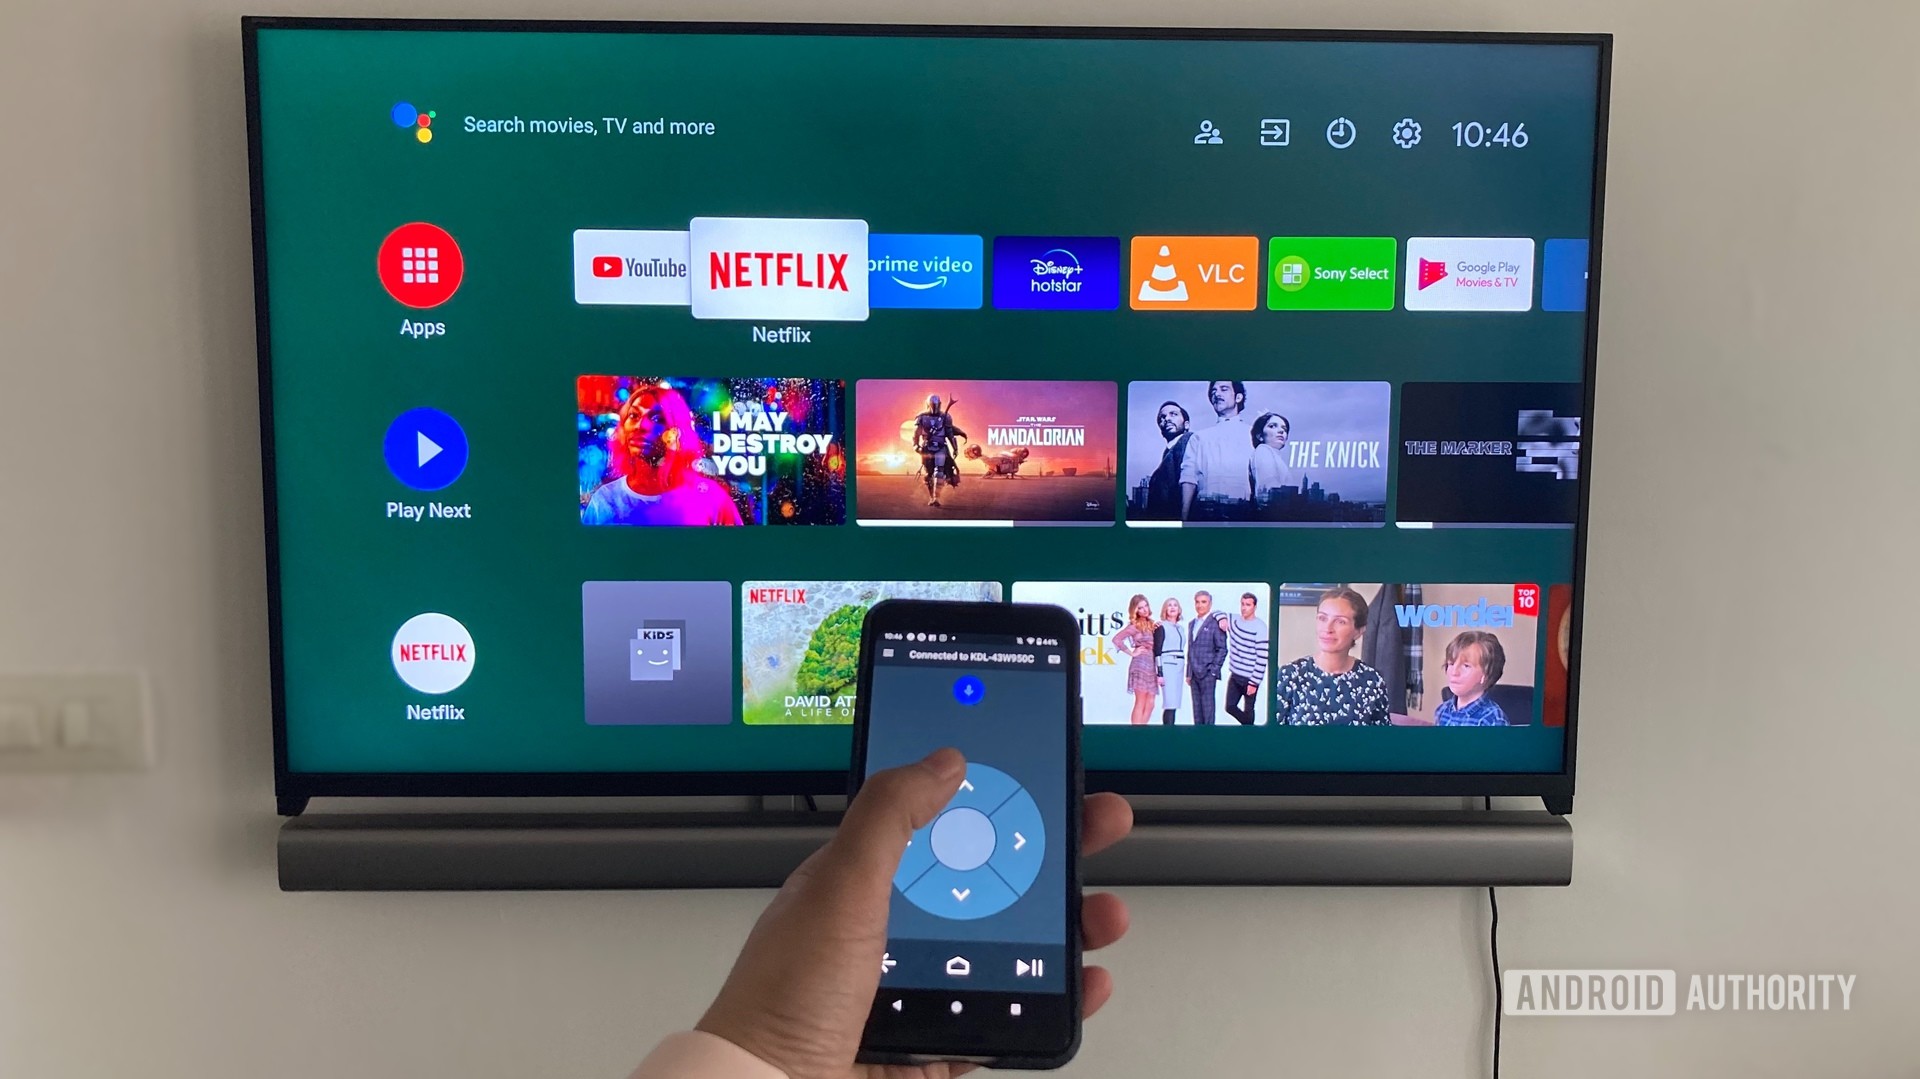 Connect via Smart TV App